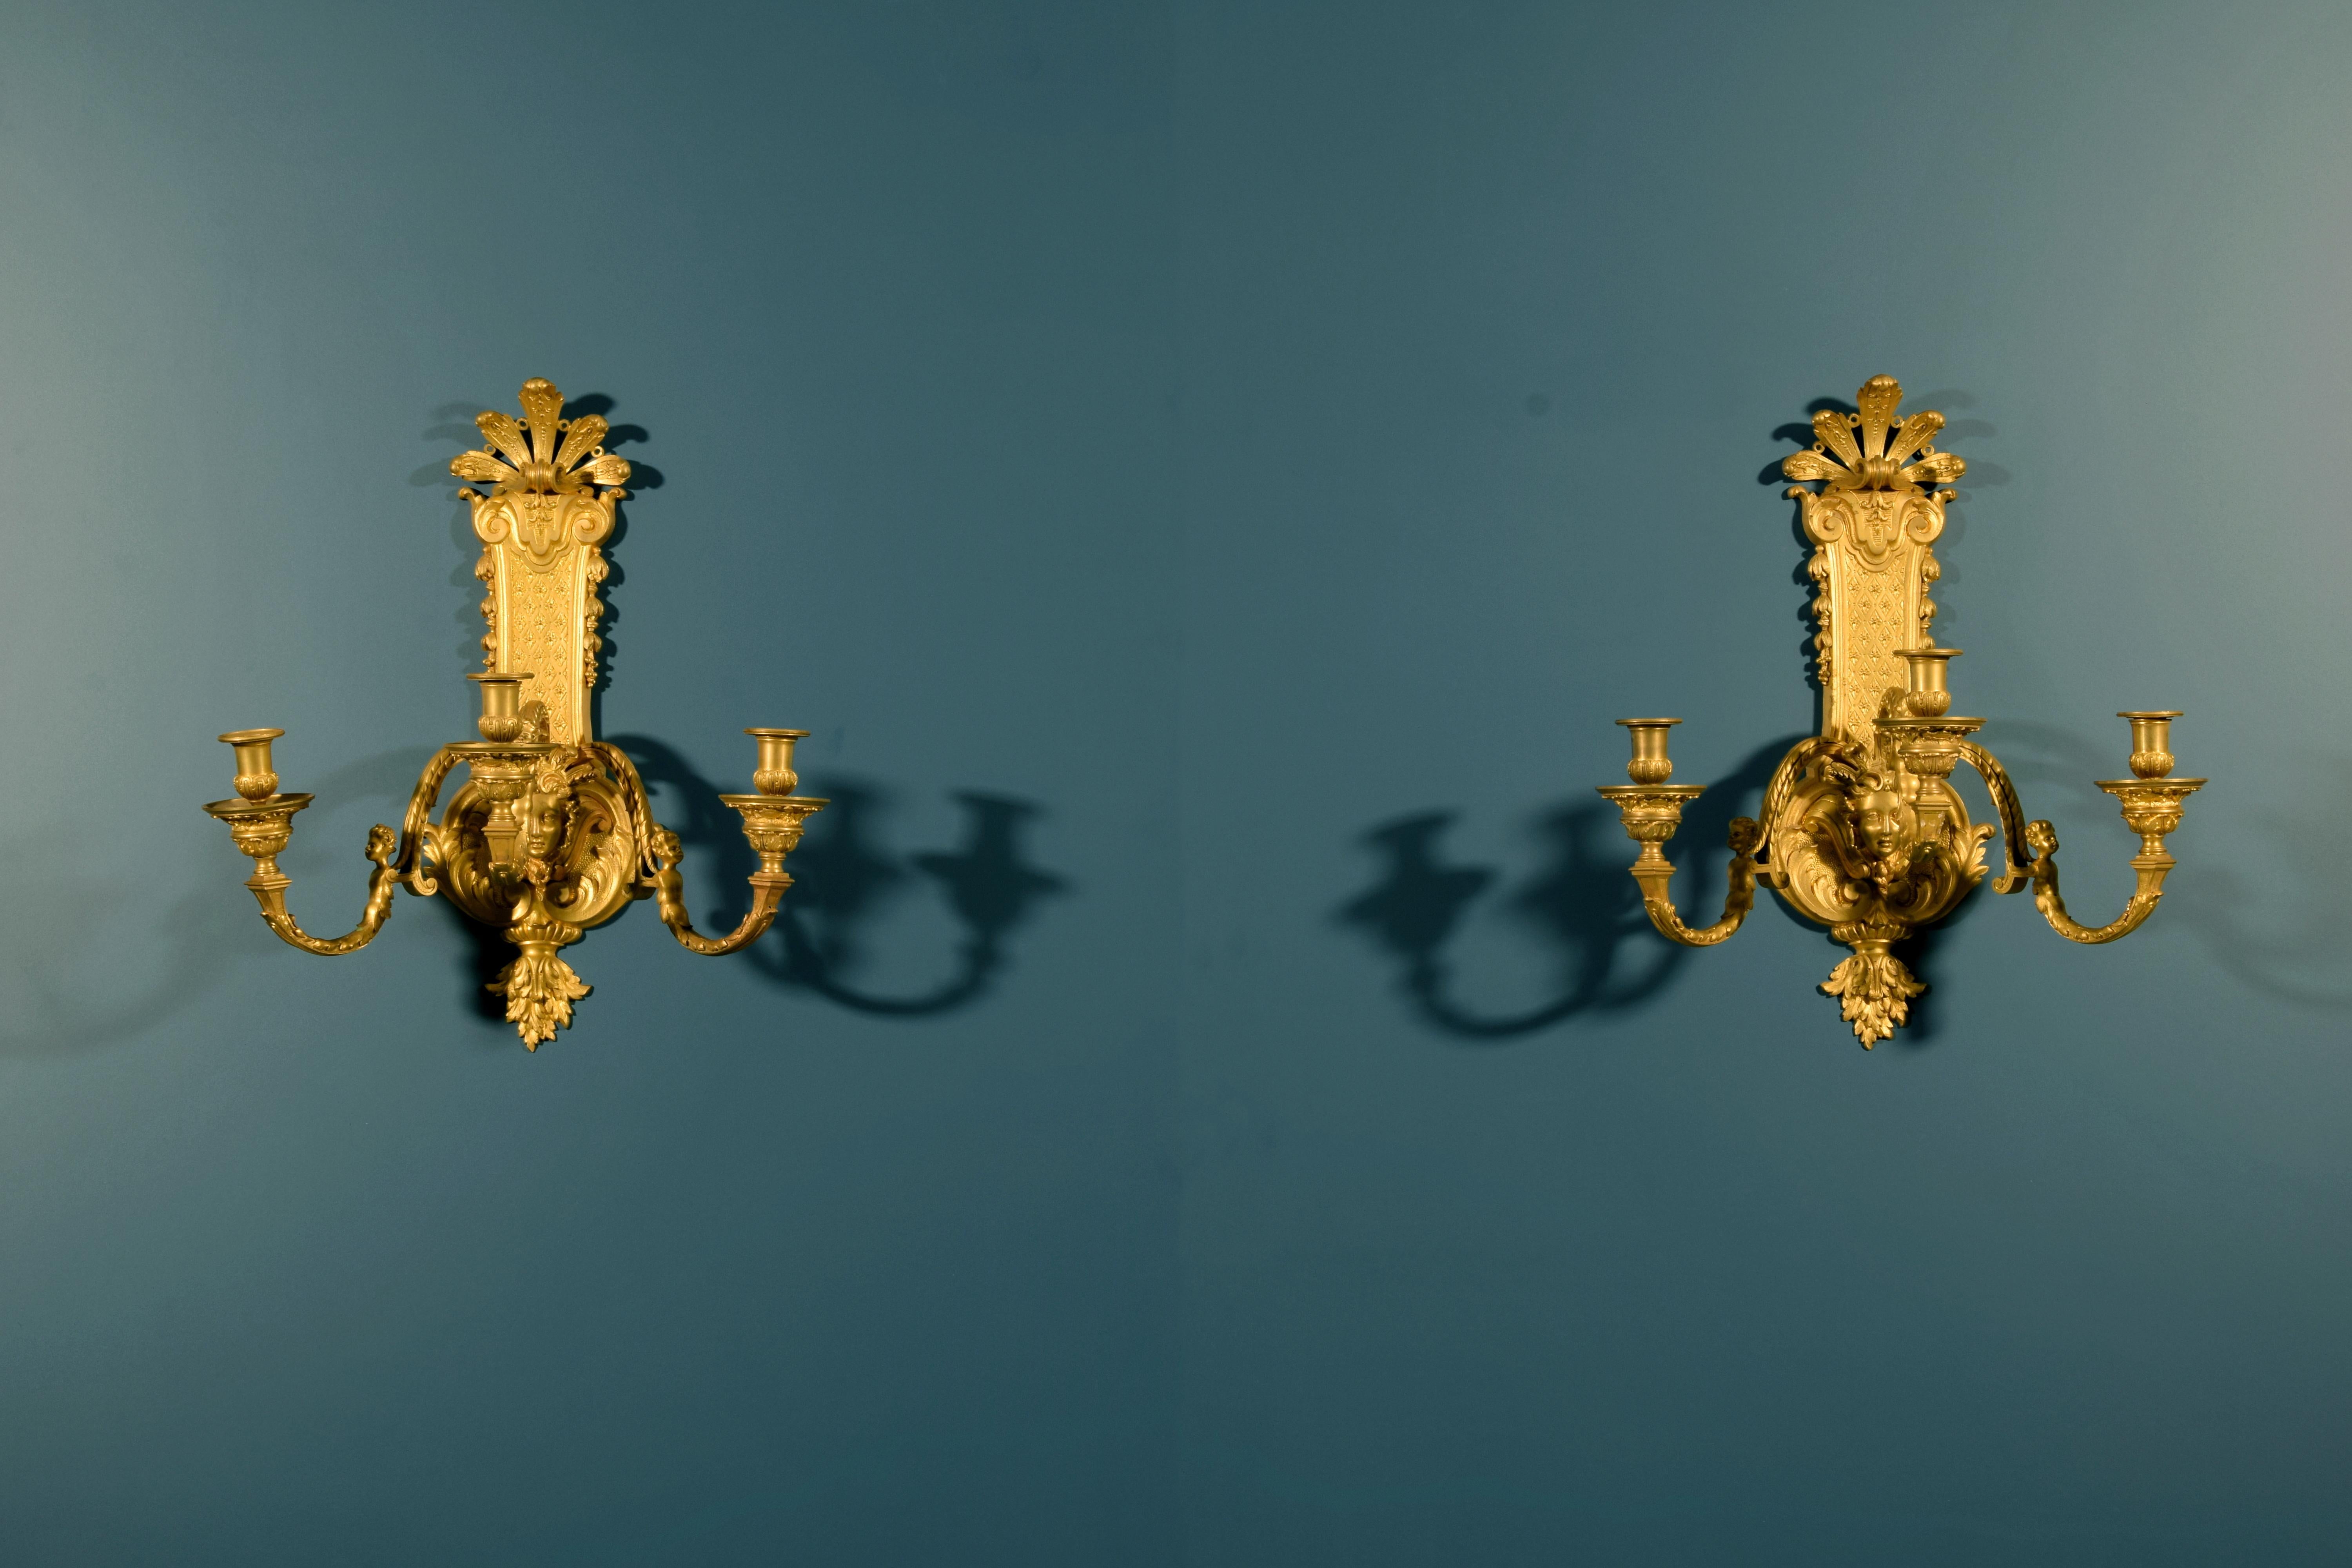 Paire d'appliques françaises de style Régence en bronze doré du XIXe siècle
Cette ravissante paire d'appliques en bronze doré a été fabriquée en France vers la fin du XIXe siècle dans le style Regency. Finement ciselés, ils se composent d'une partie